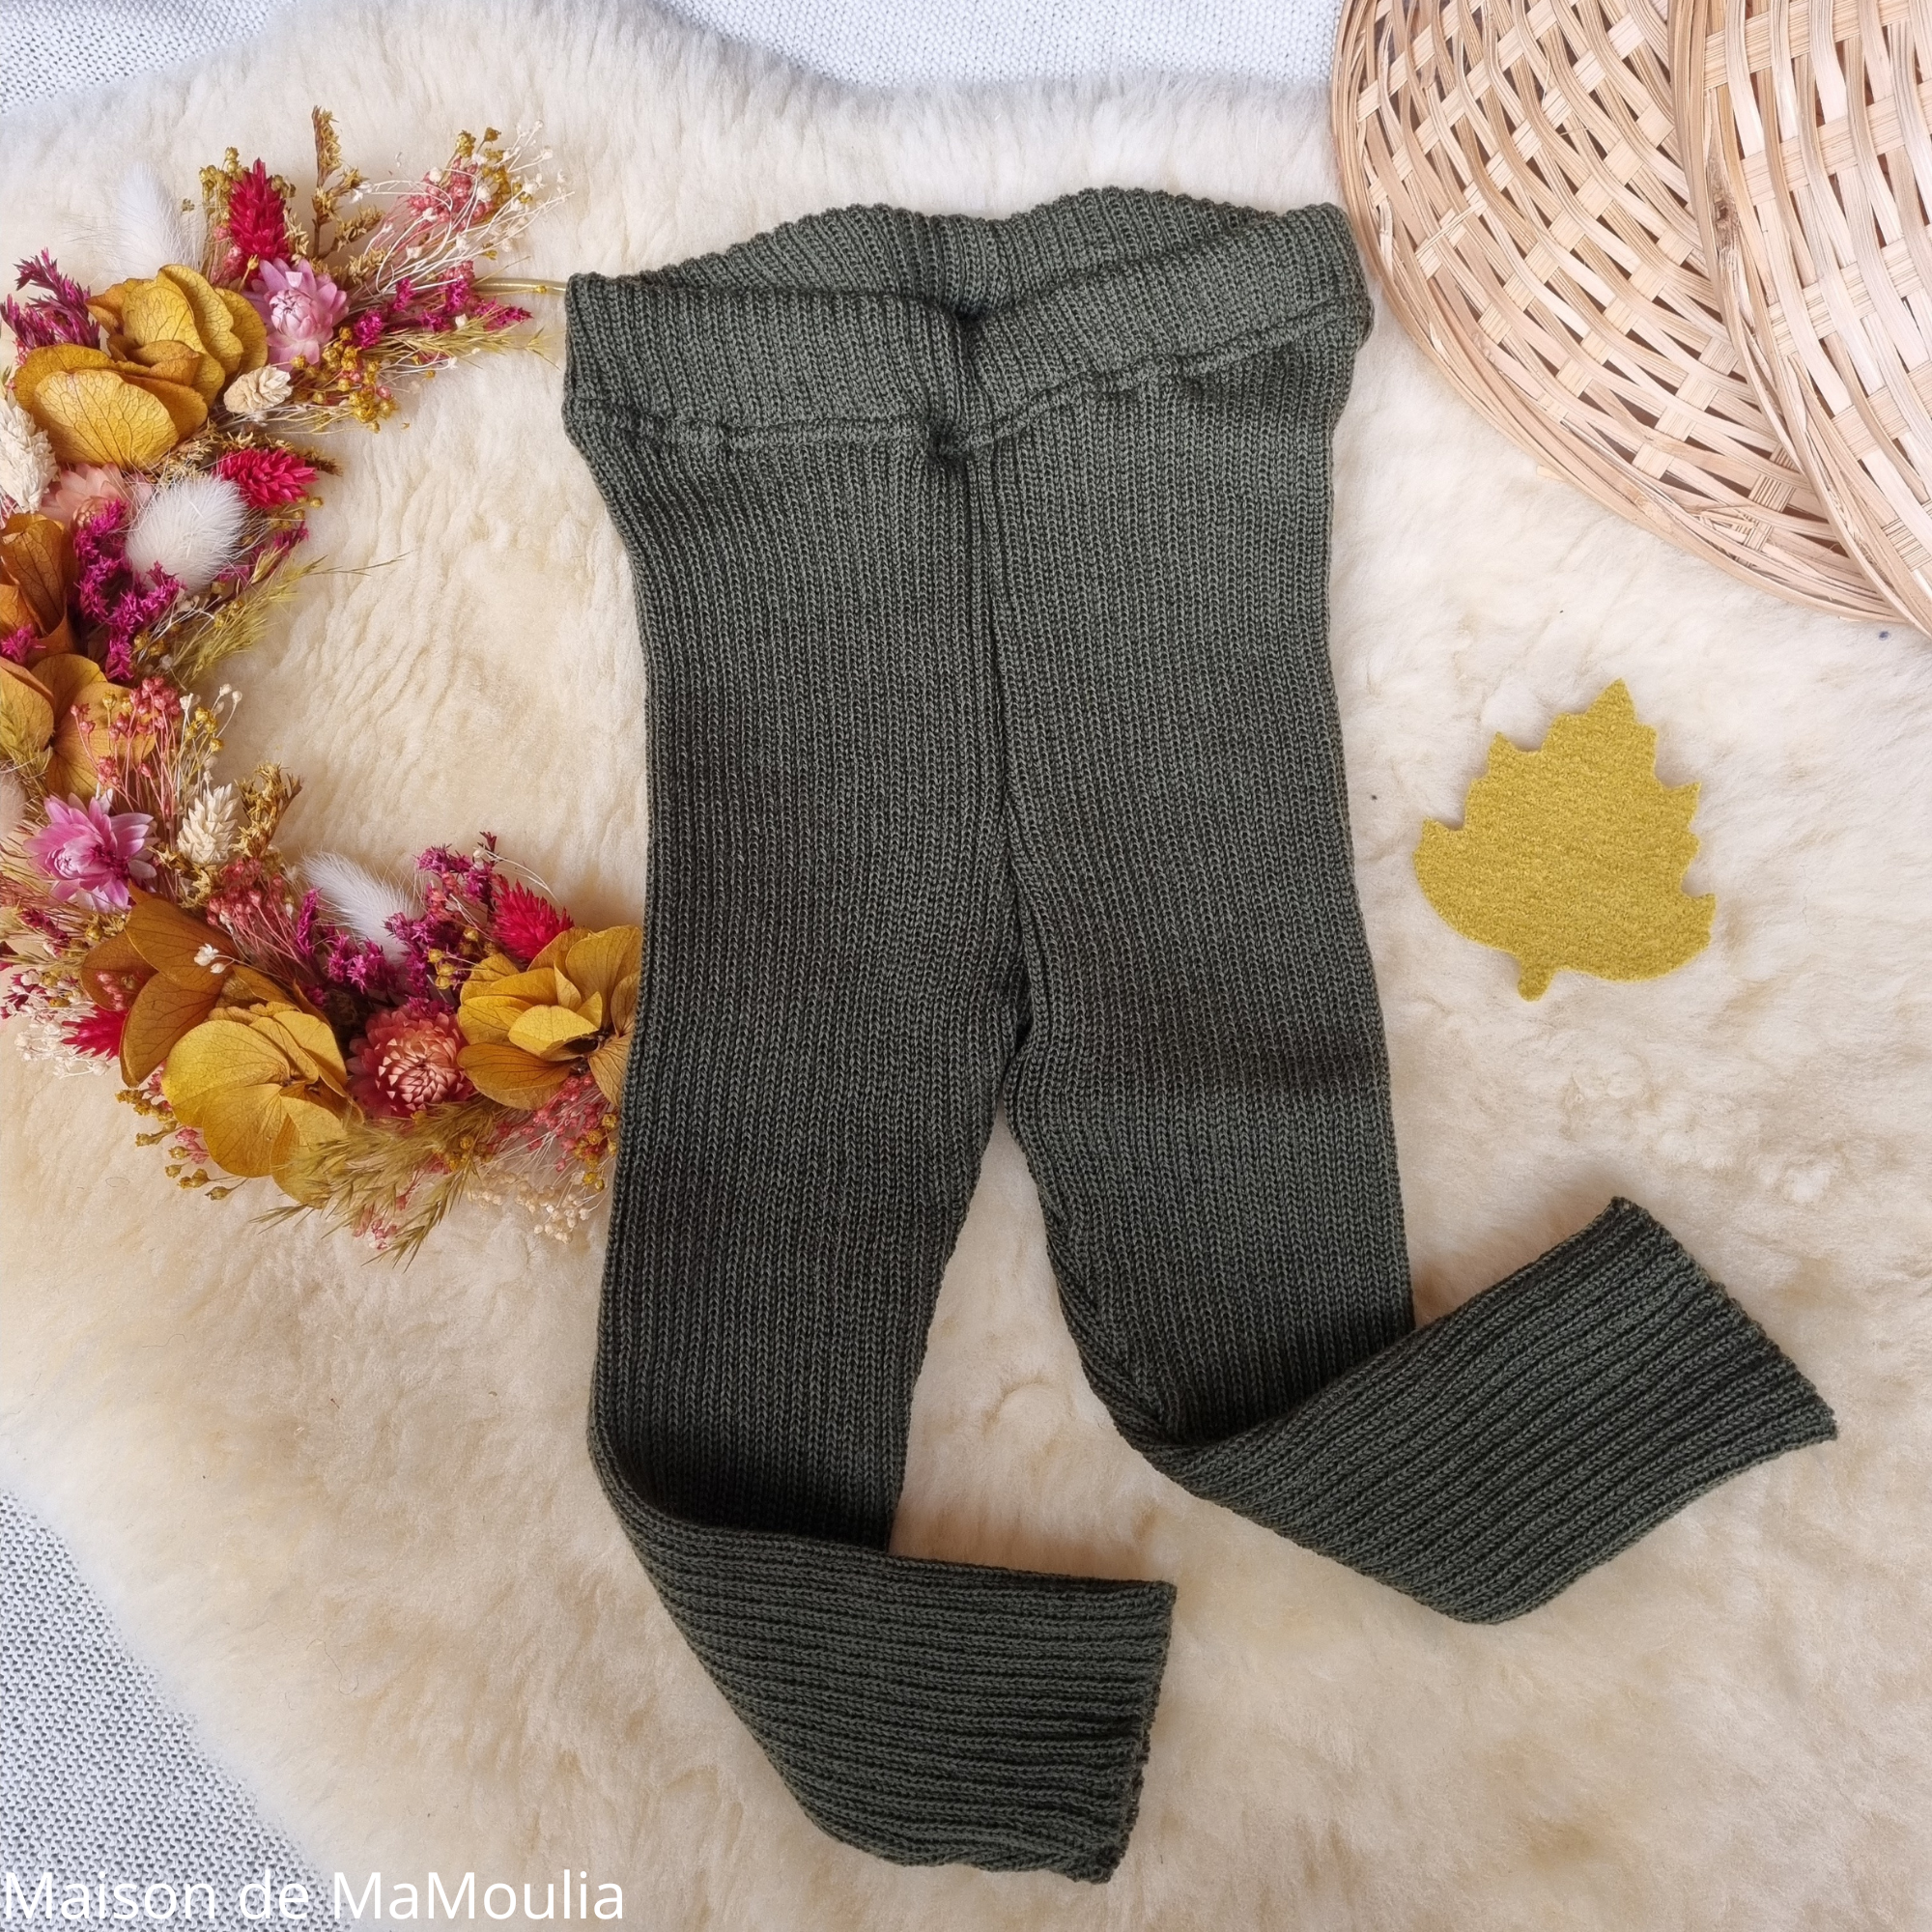 disana-legging-collant-pure-laine-merinos-tricotée-bebe-enfant-maison-de-mamoulia- vert- olive